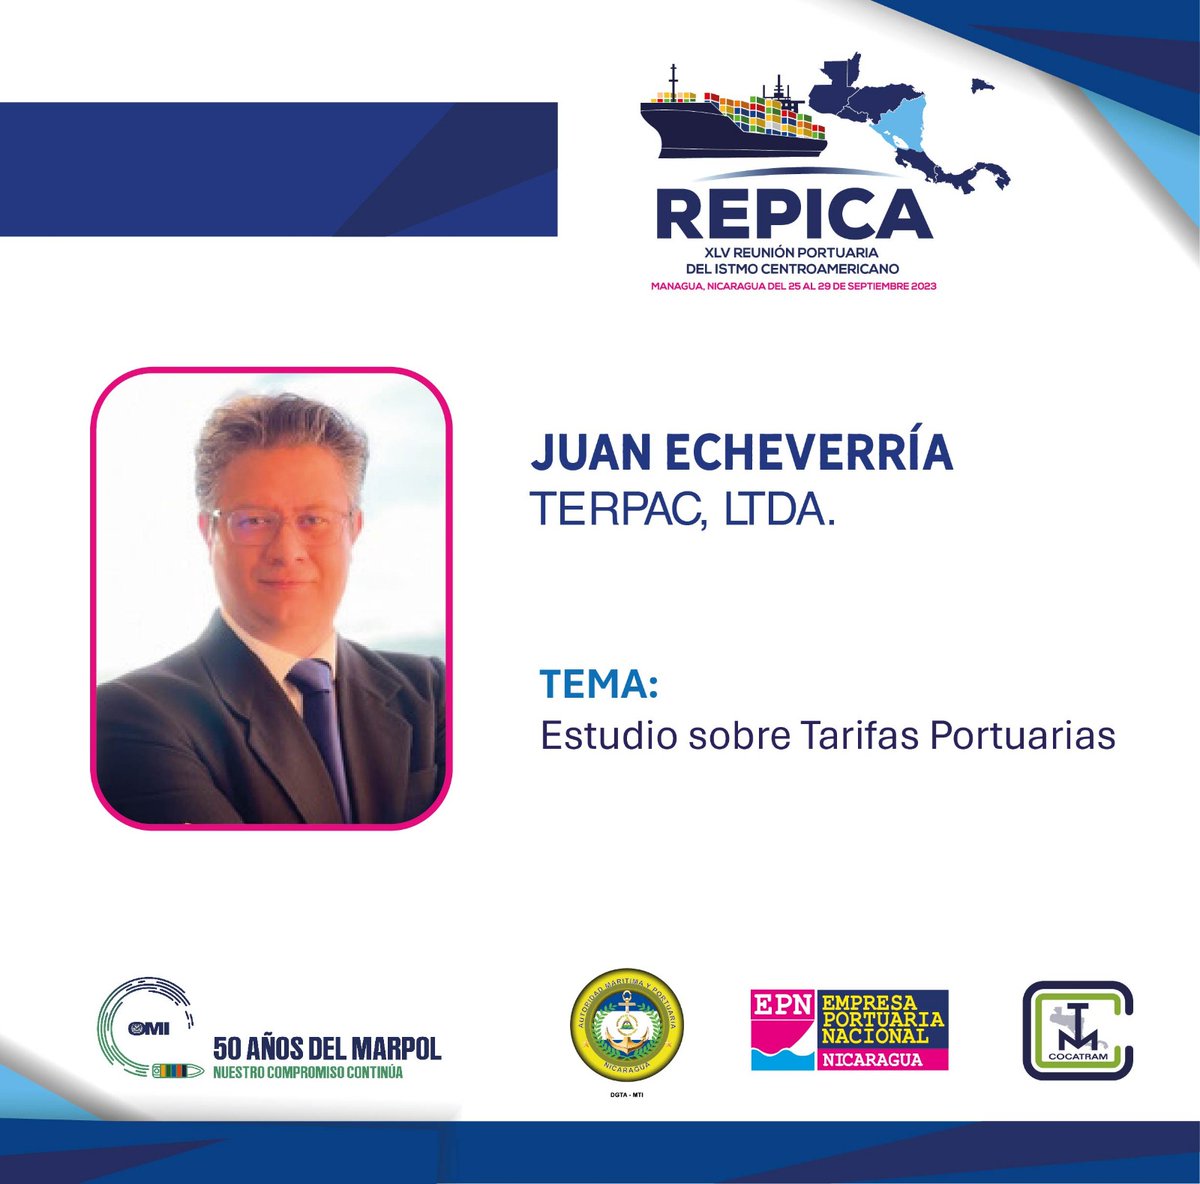 @cocatram Juan Echeverría, Director de Proyectos Terpac Ltda. presenta Estudio sobre Tarifas Portuarias, a los miembros en la XLV REPICA.